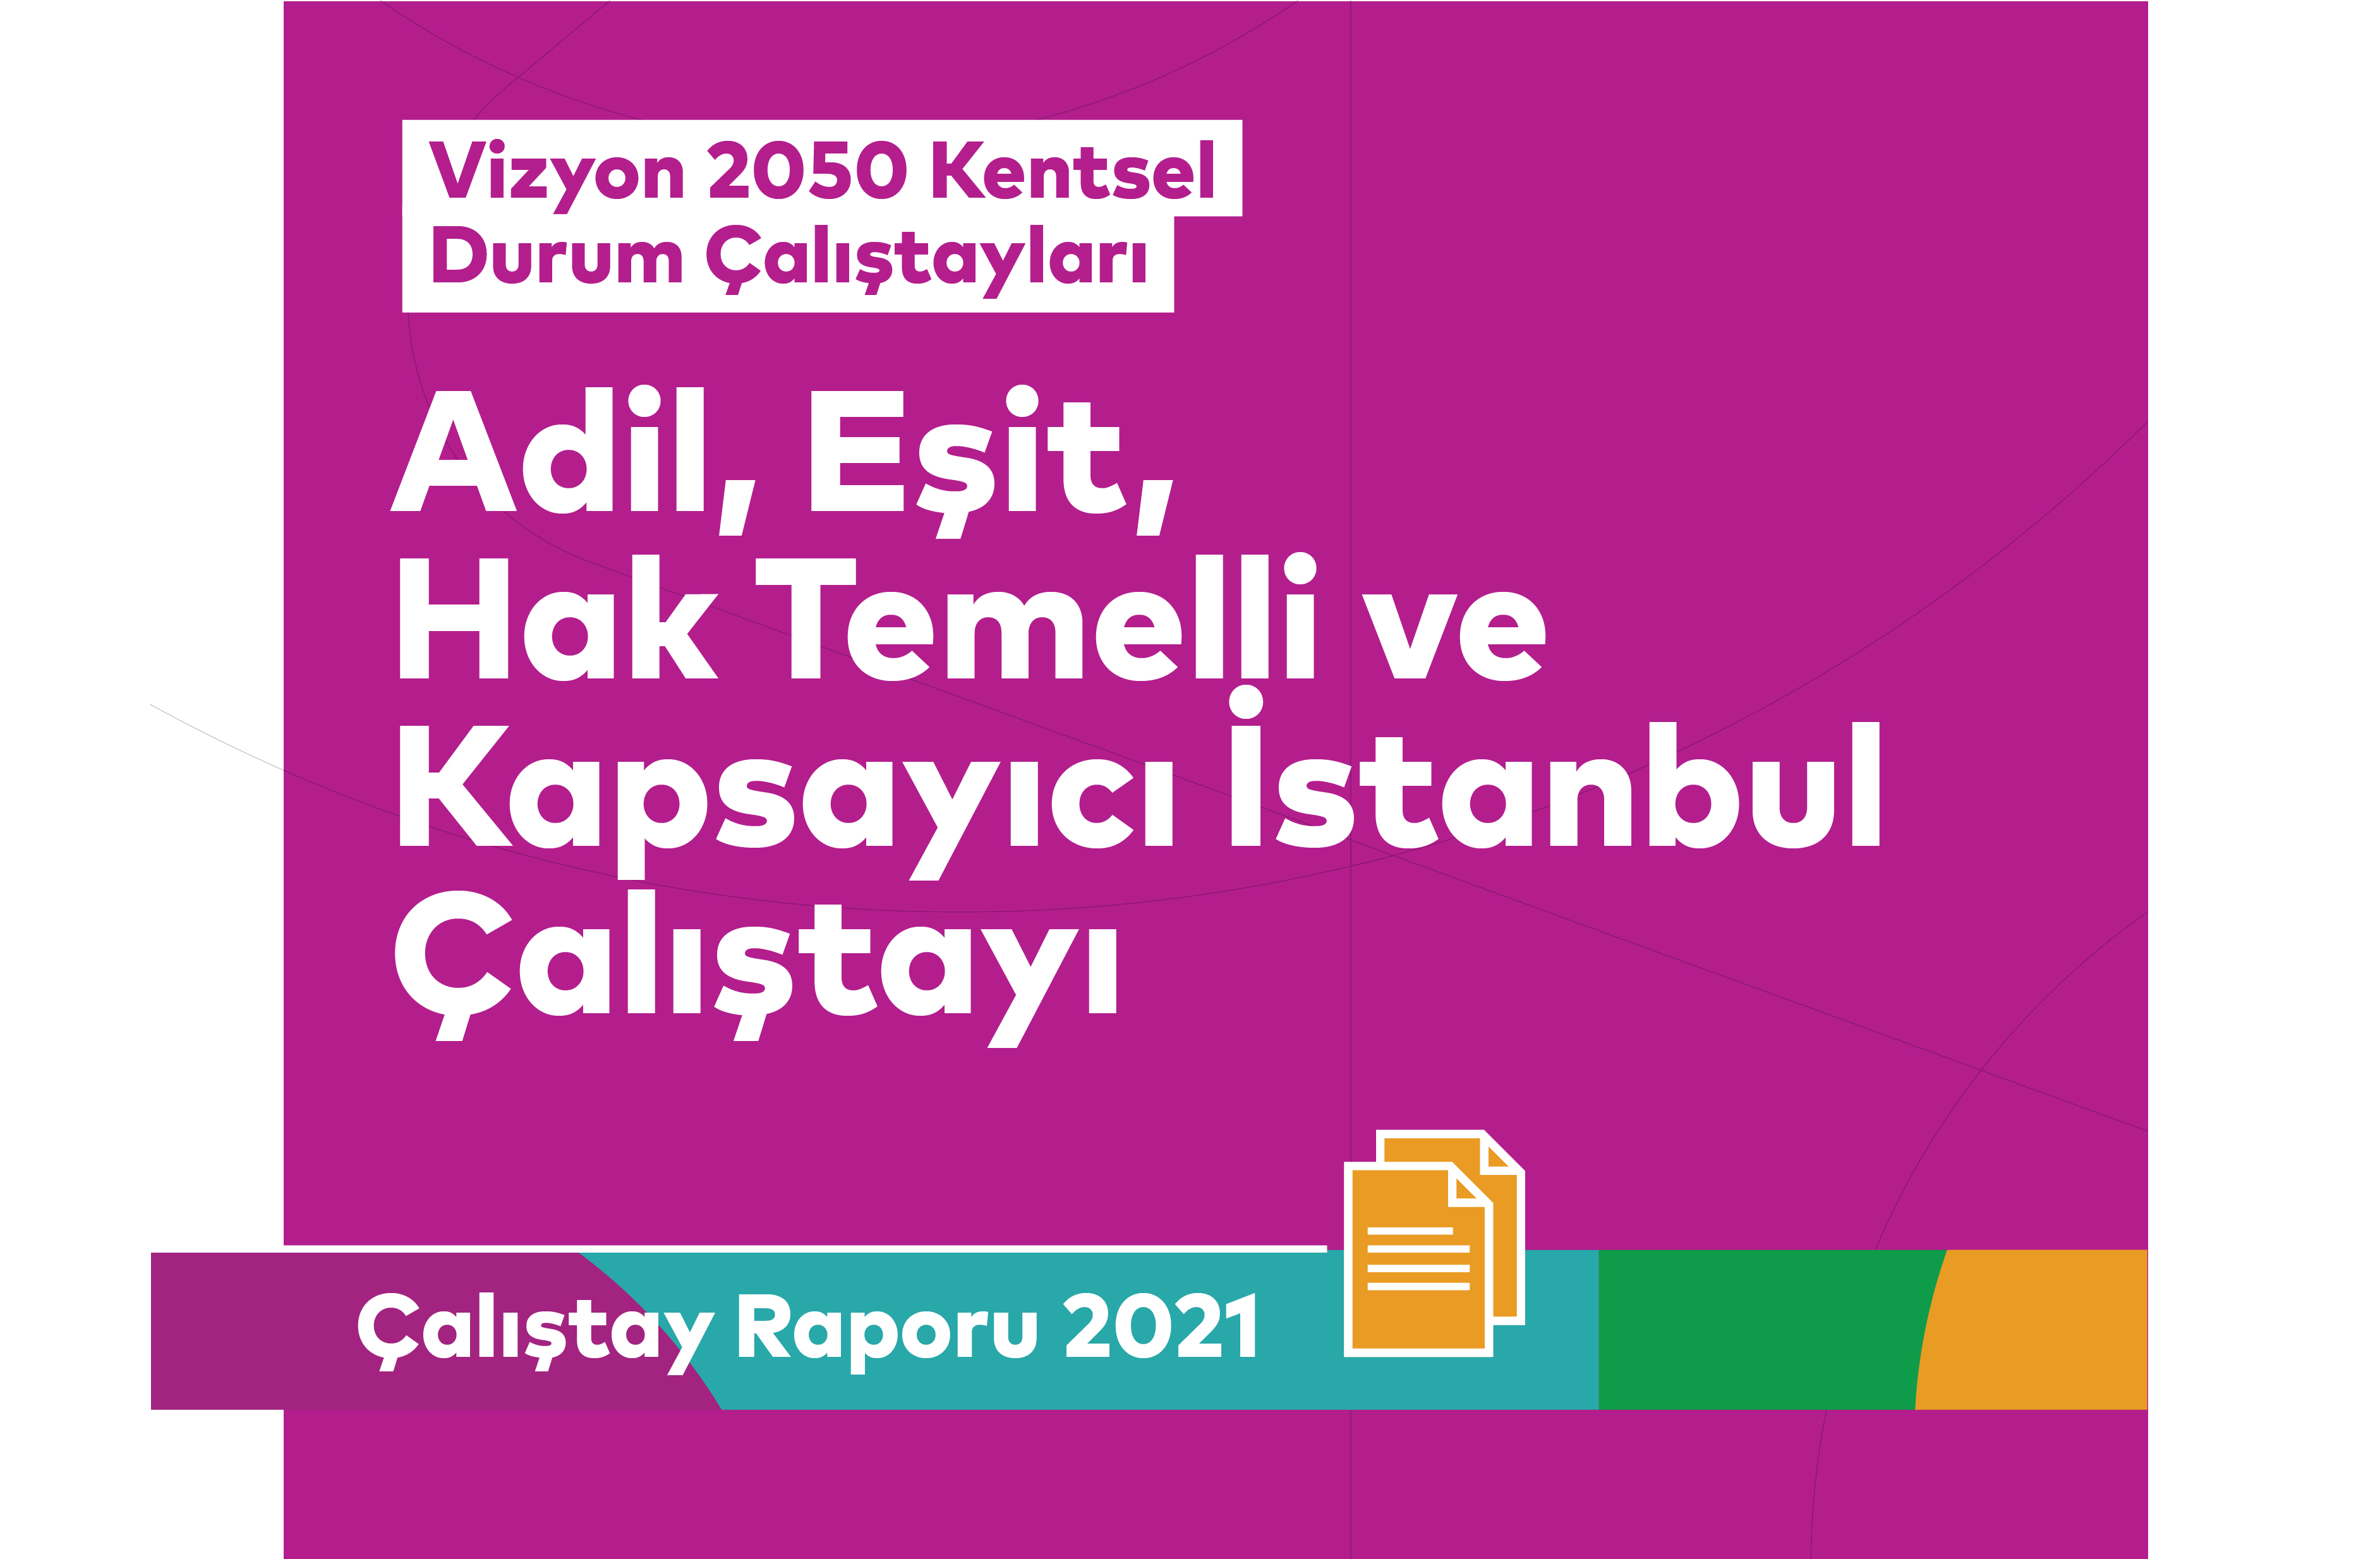 Adil, Eşit, Hak Temelli ve Kapsayıcı İstanbul Çalıştayı Raporu Yayımlandı